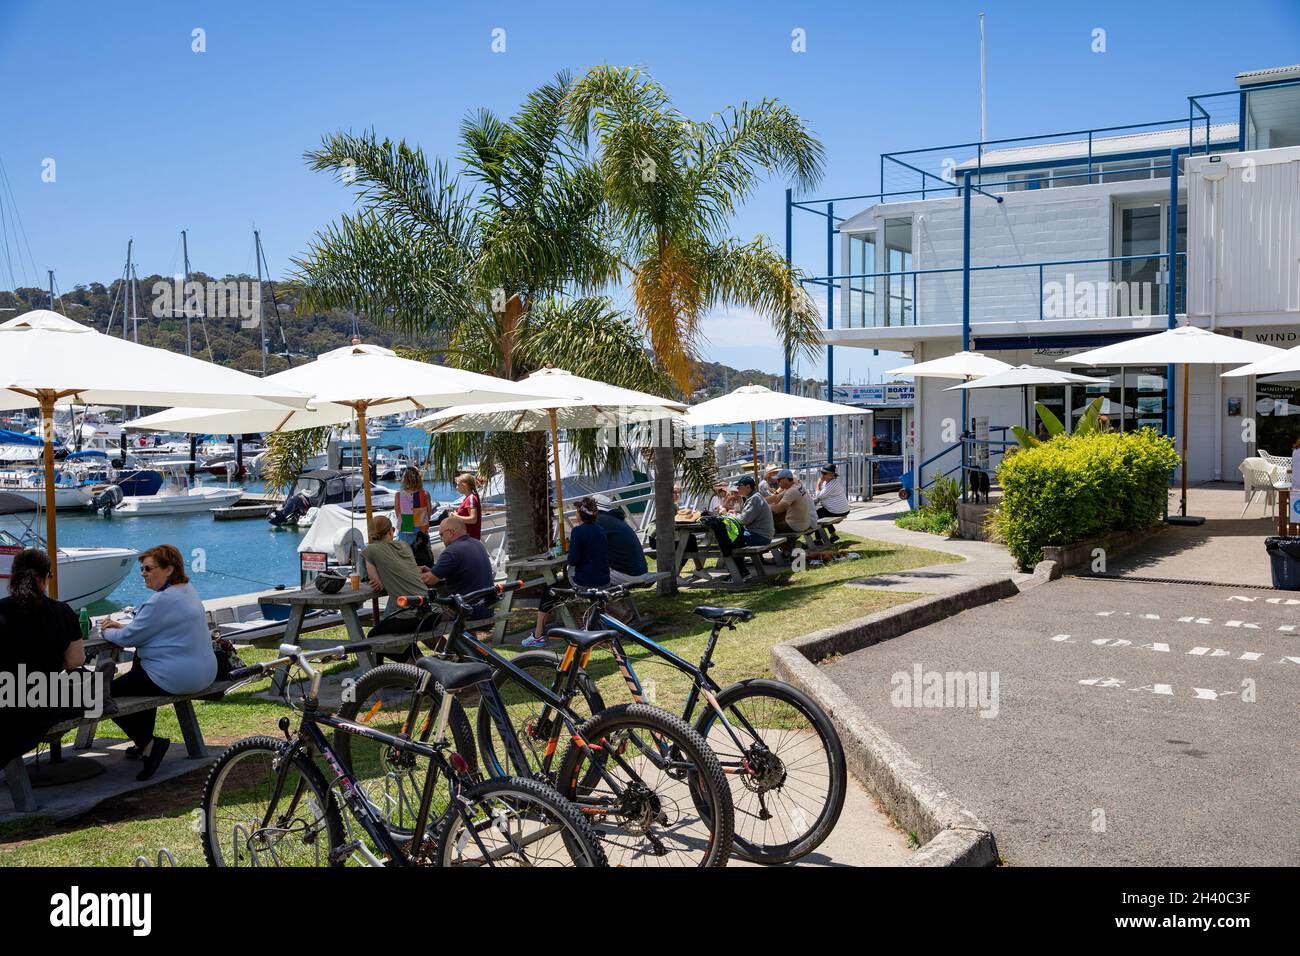 Café de Sydney à Bayview sur la rive de Pittwater dans la région des plages du nord de Sydney, les cyclistes s'arrêtent pour manger et boire, Nouvelle-Galles du Sud, Australie Banque D'Images